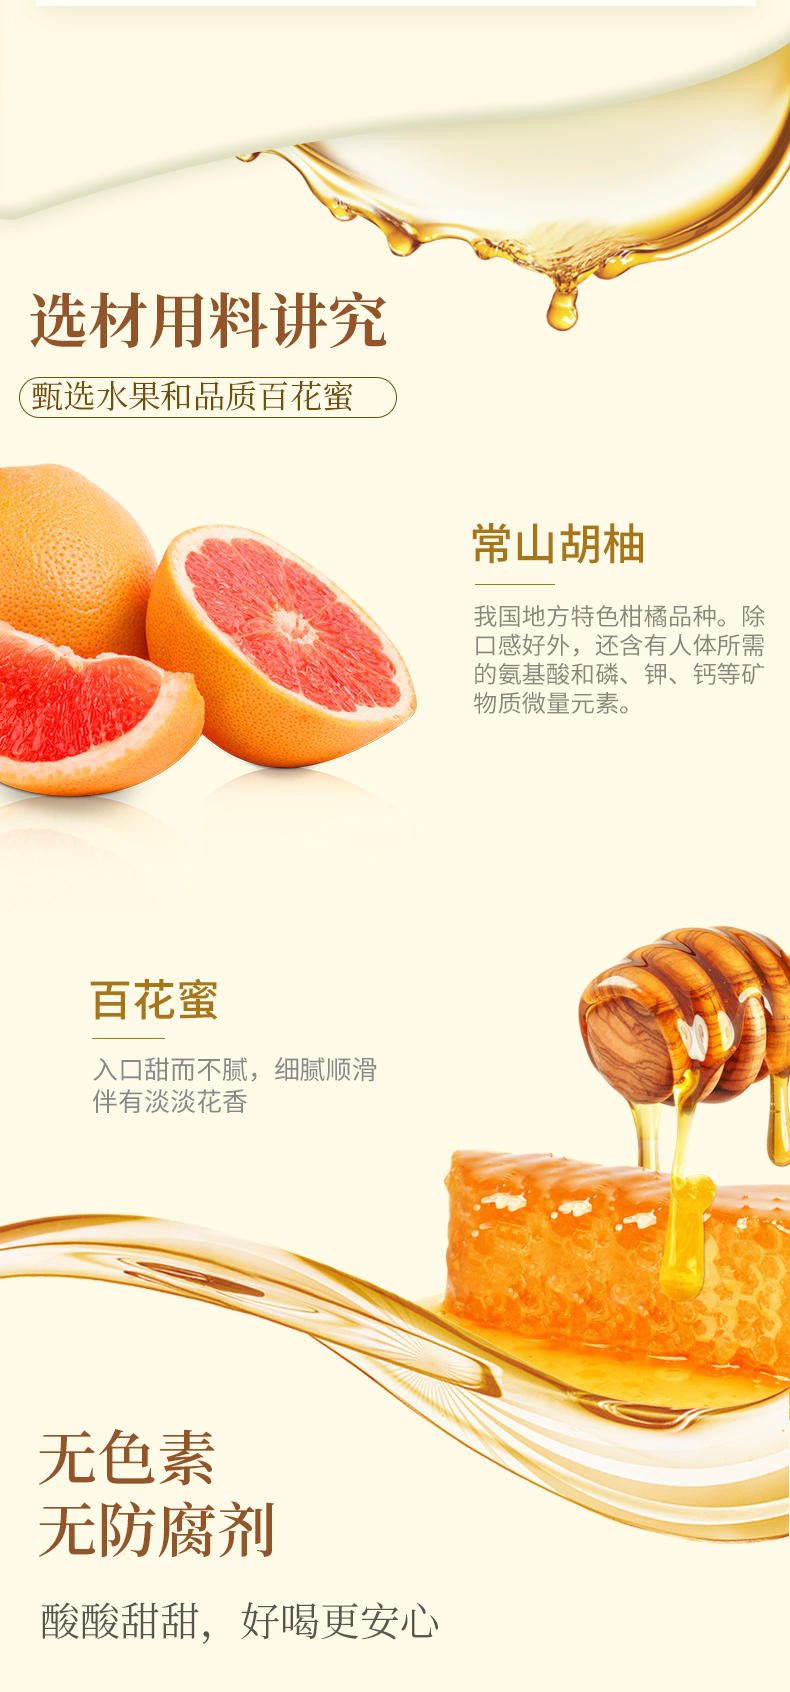 福事多 蜂蜜柚子茶【沥干物≥25%】